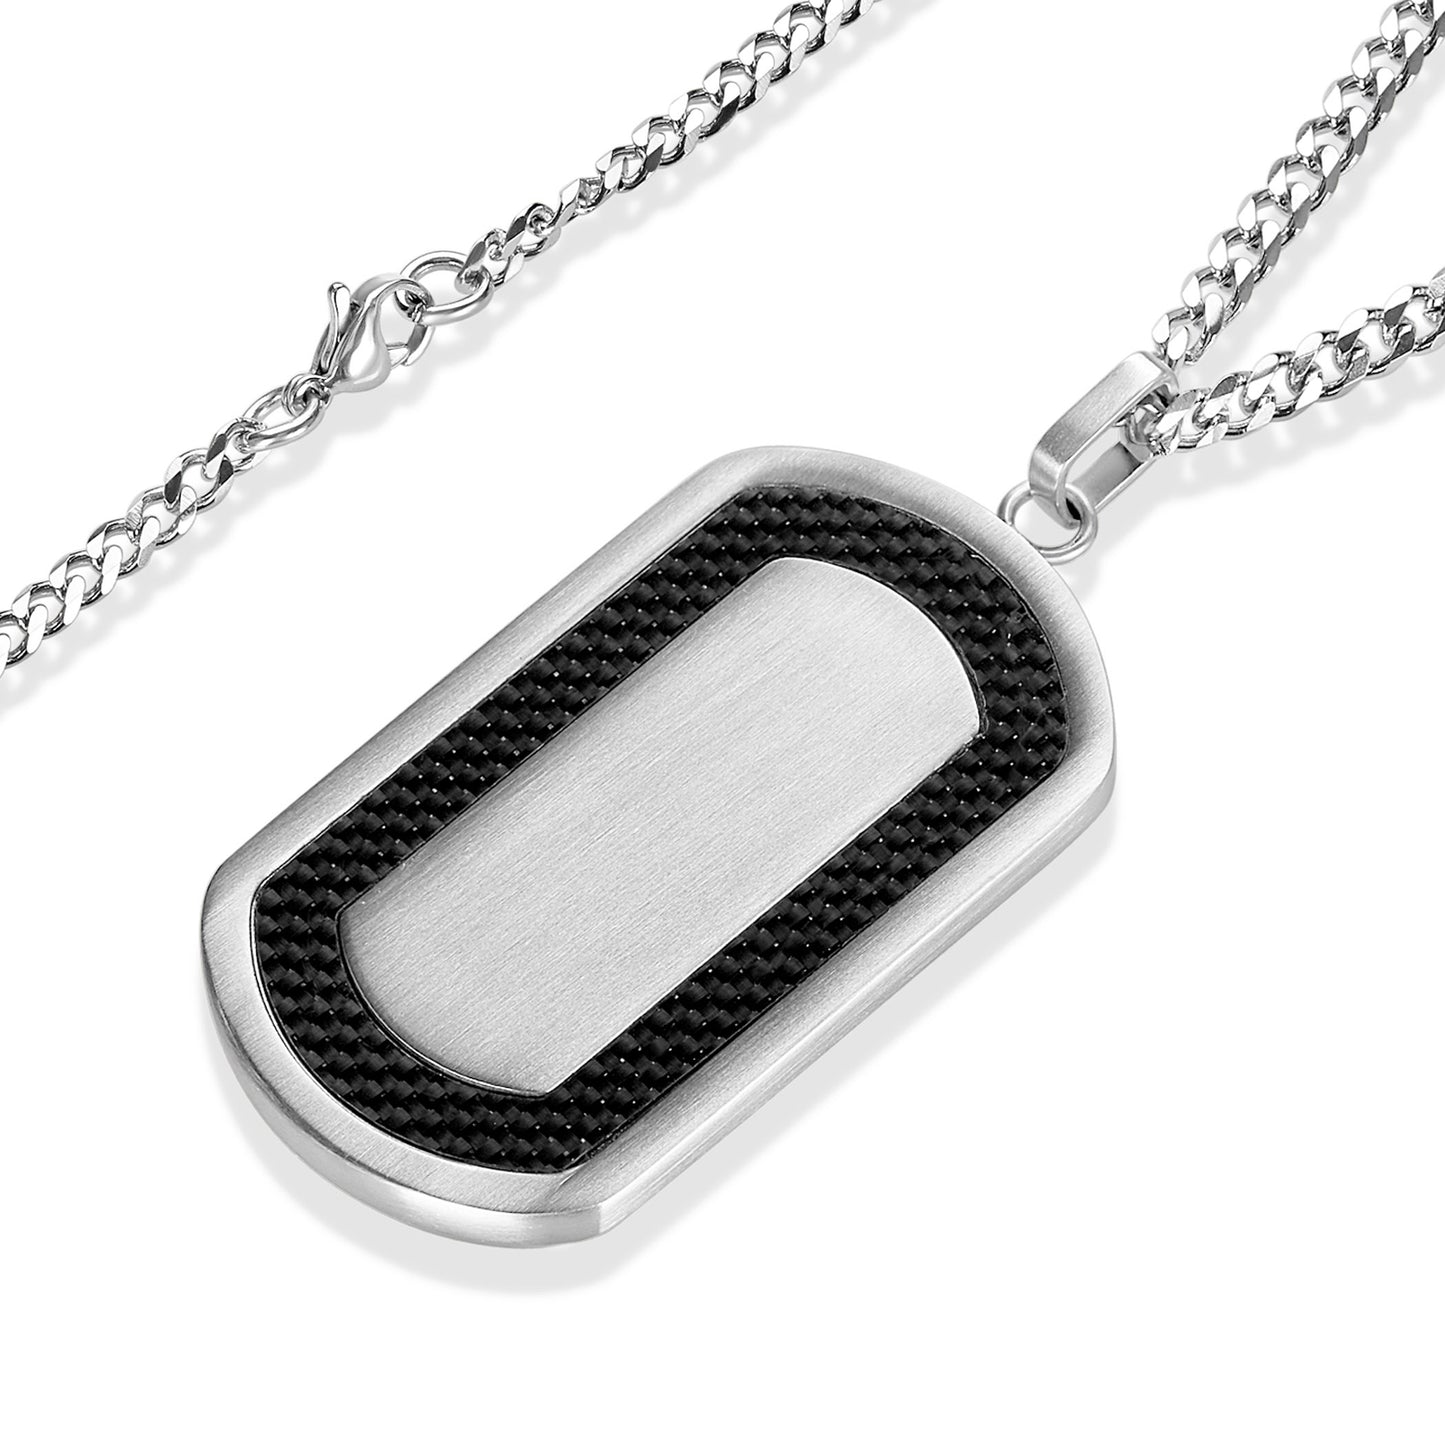 Men's Stainless Steel Brushed Black Carbon Fiber Frame Pendant Necklace - 24"